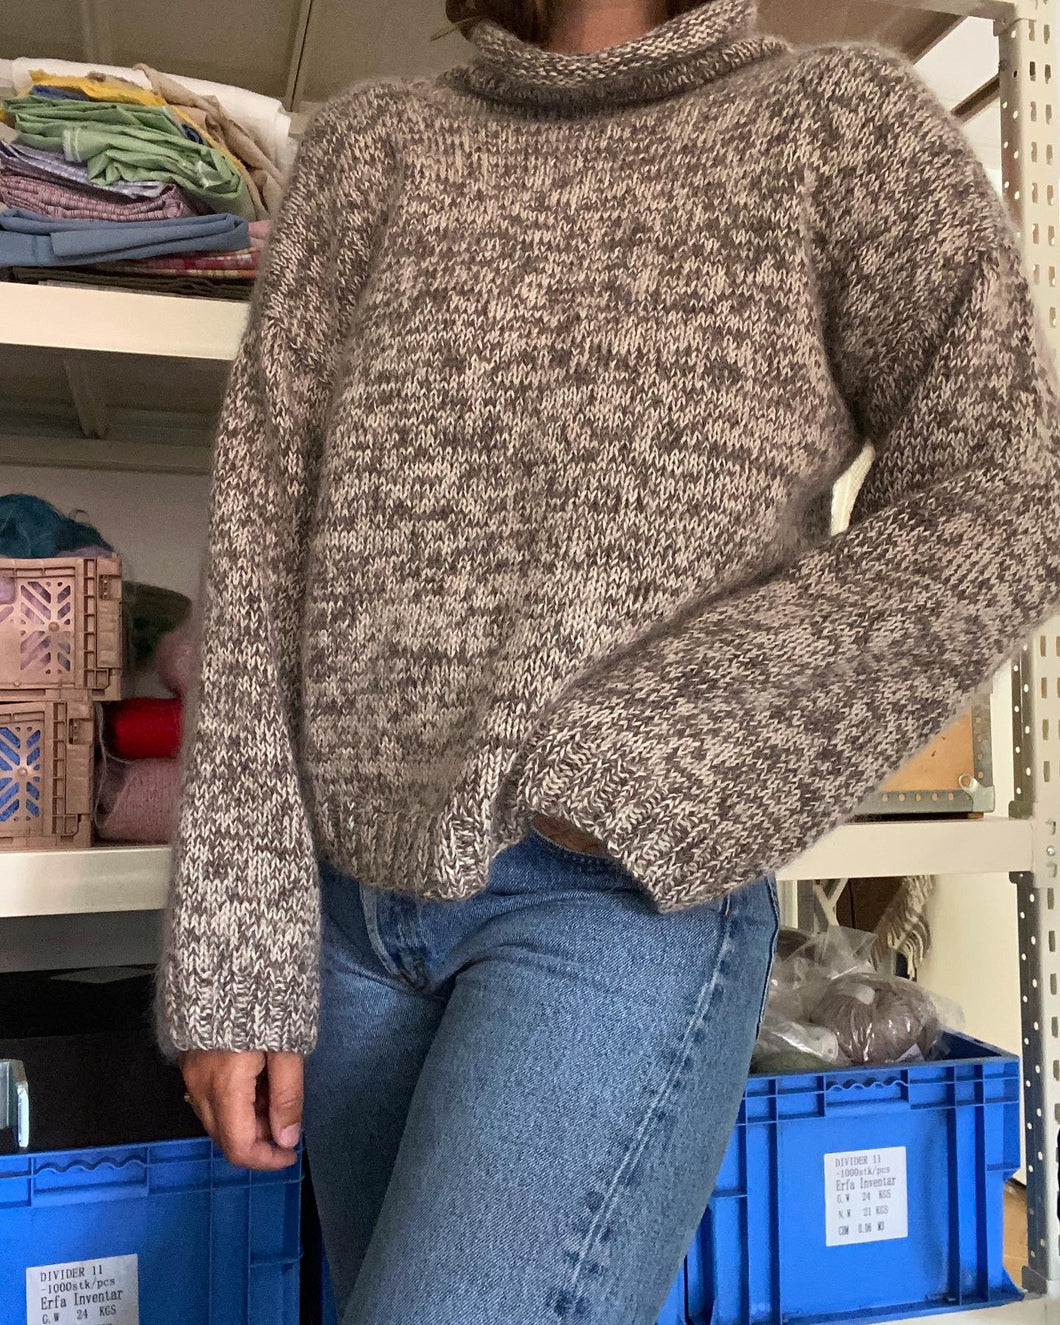 Deima's daily sweater - knitting pattern (dansk)